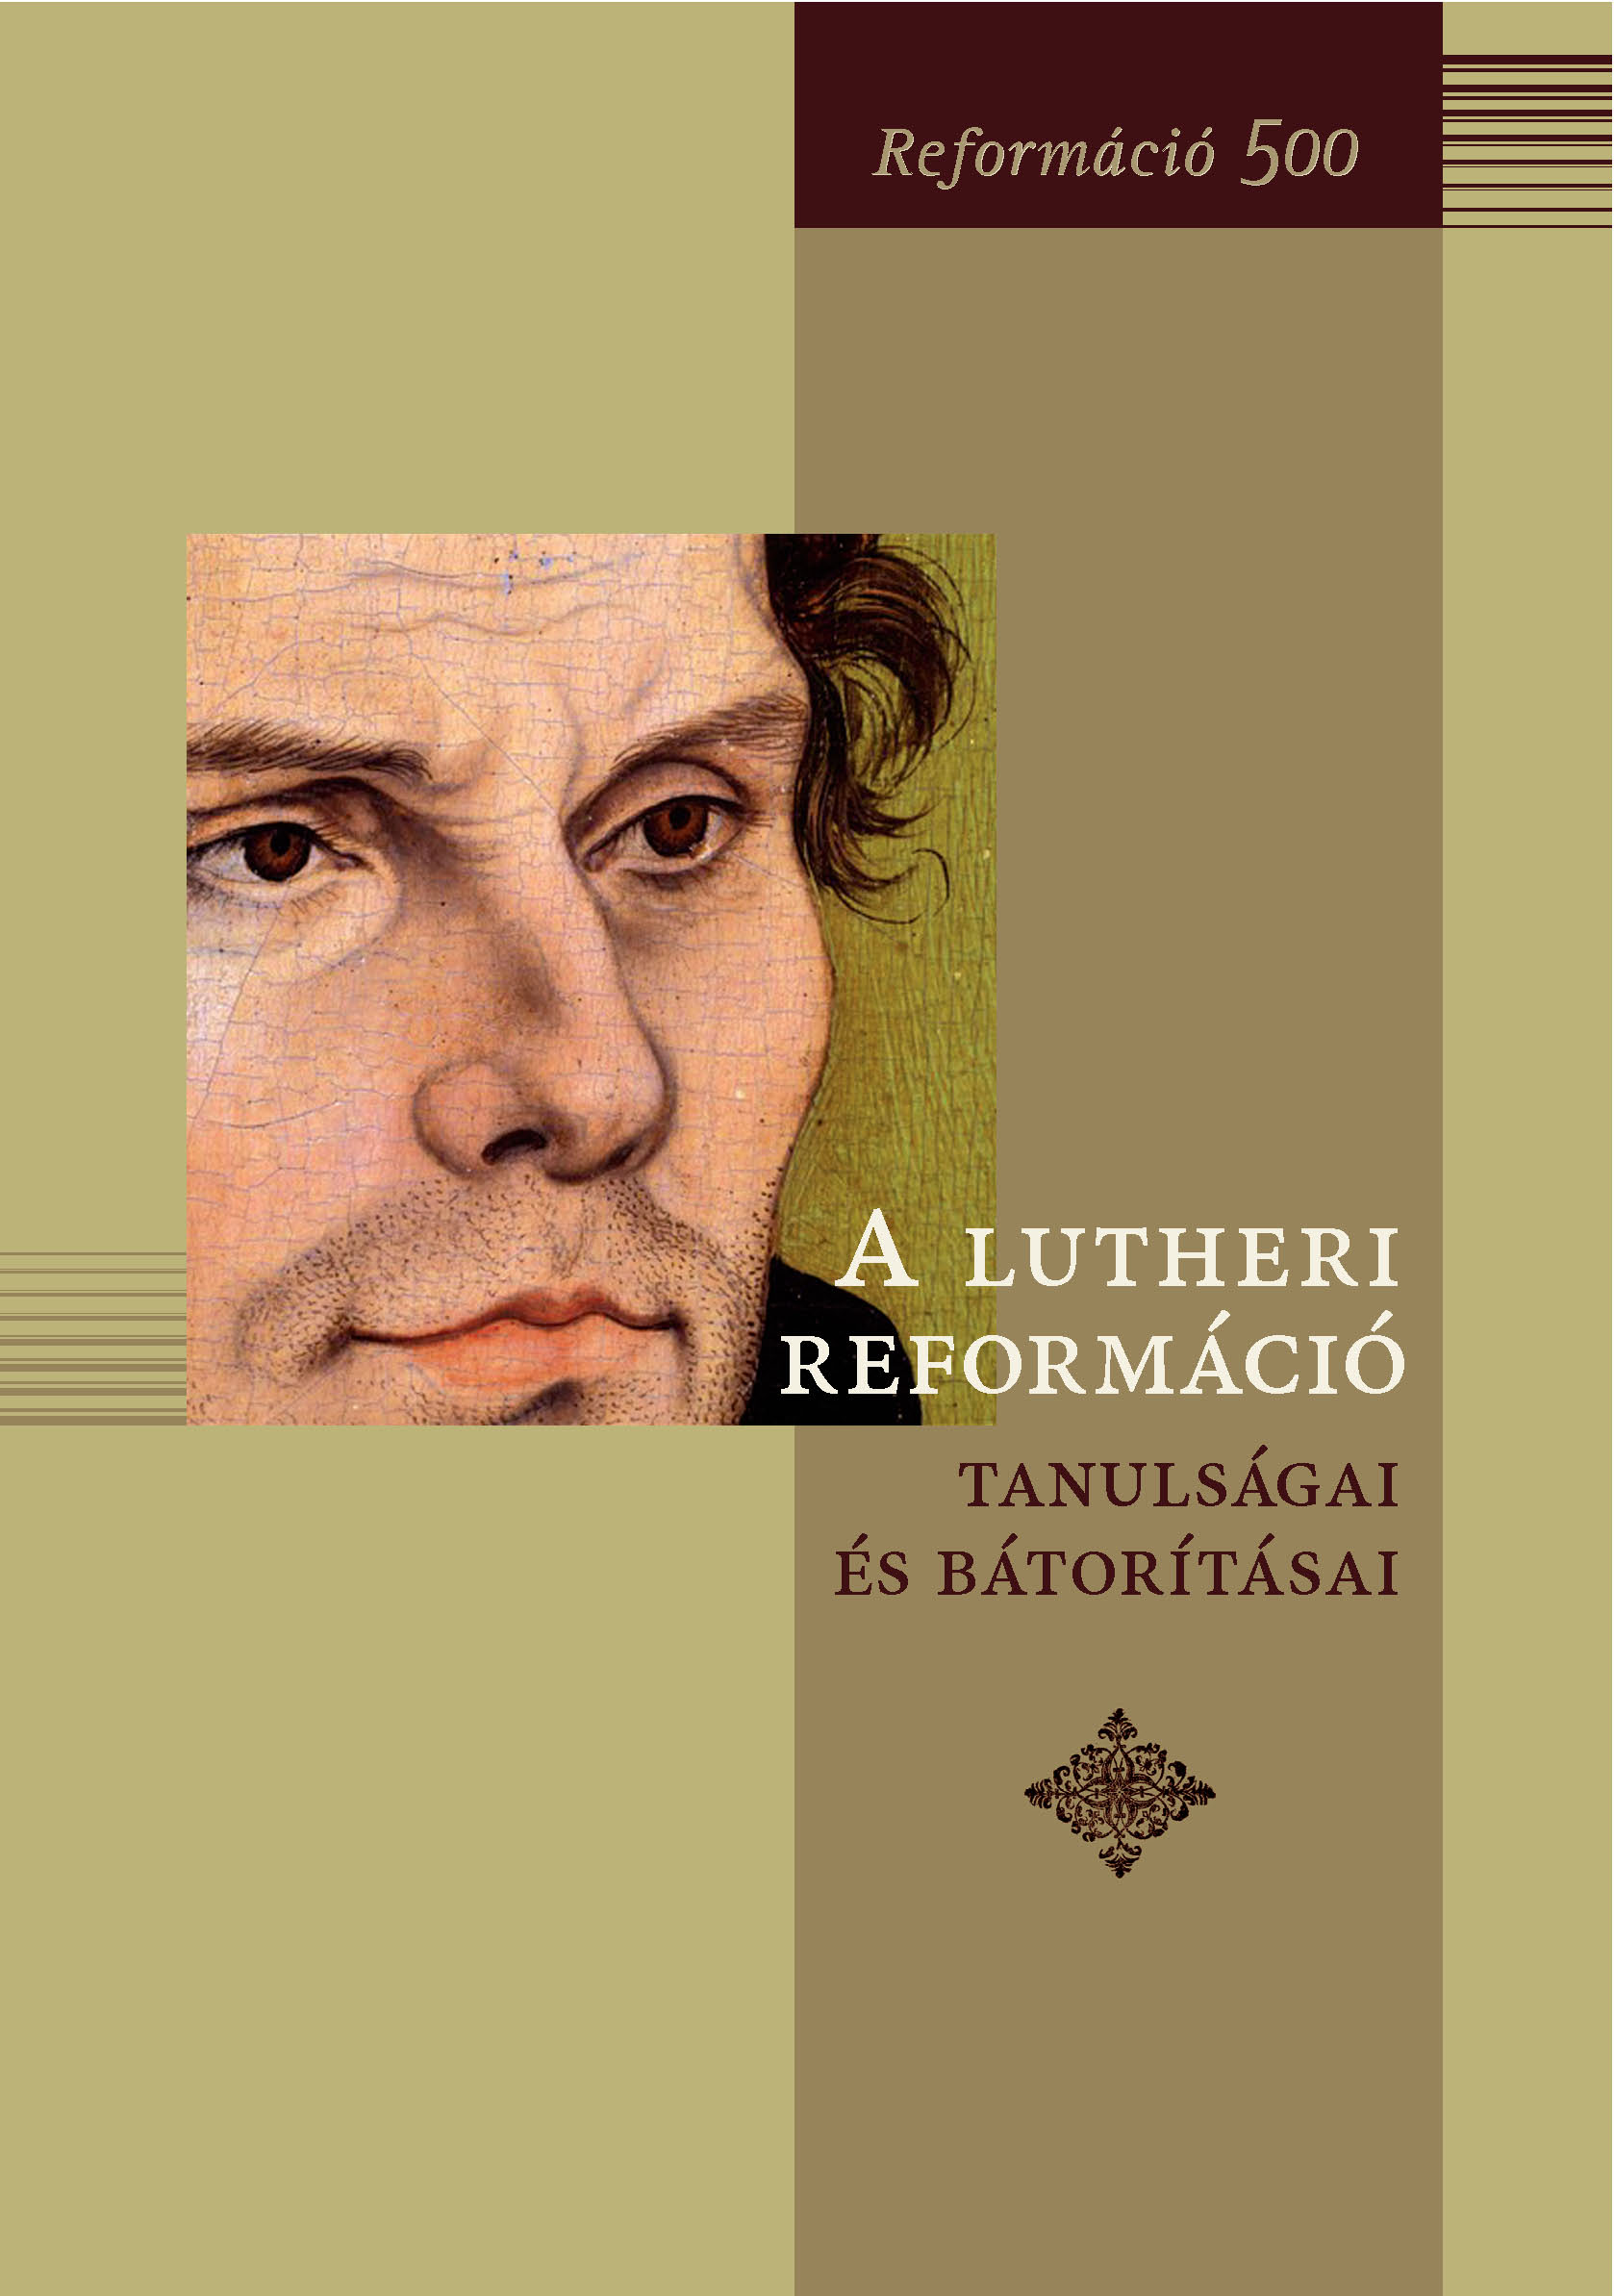 A lutheri reformáció tanulságai és bátorításai